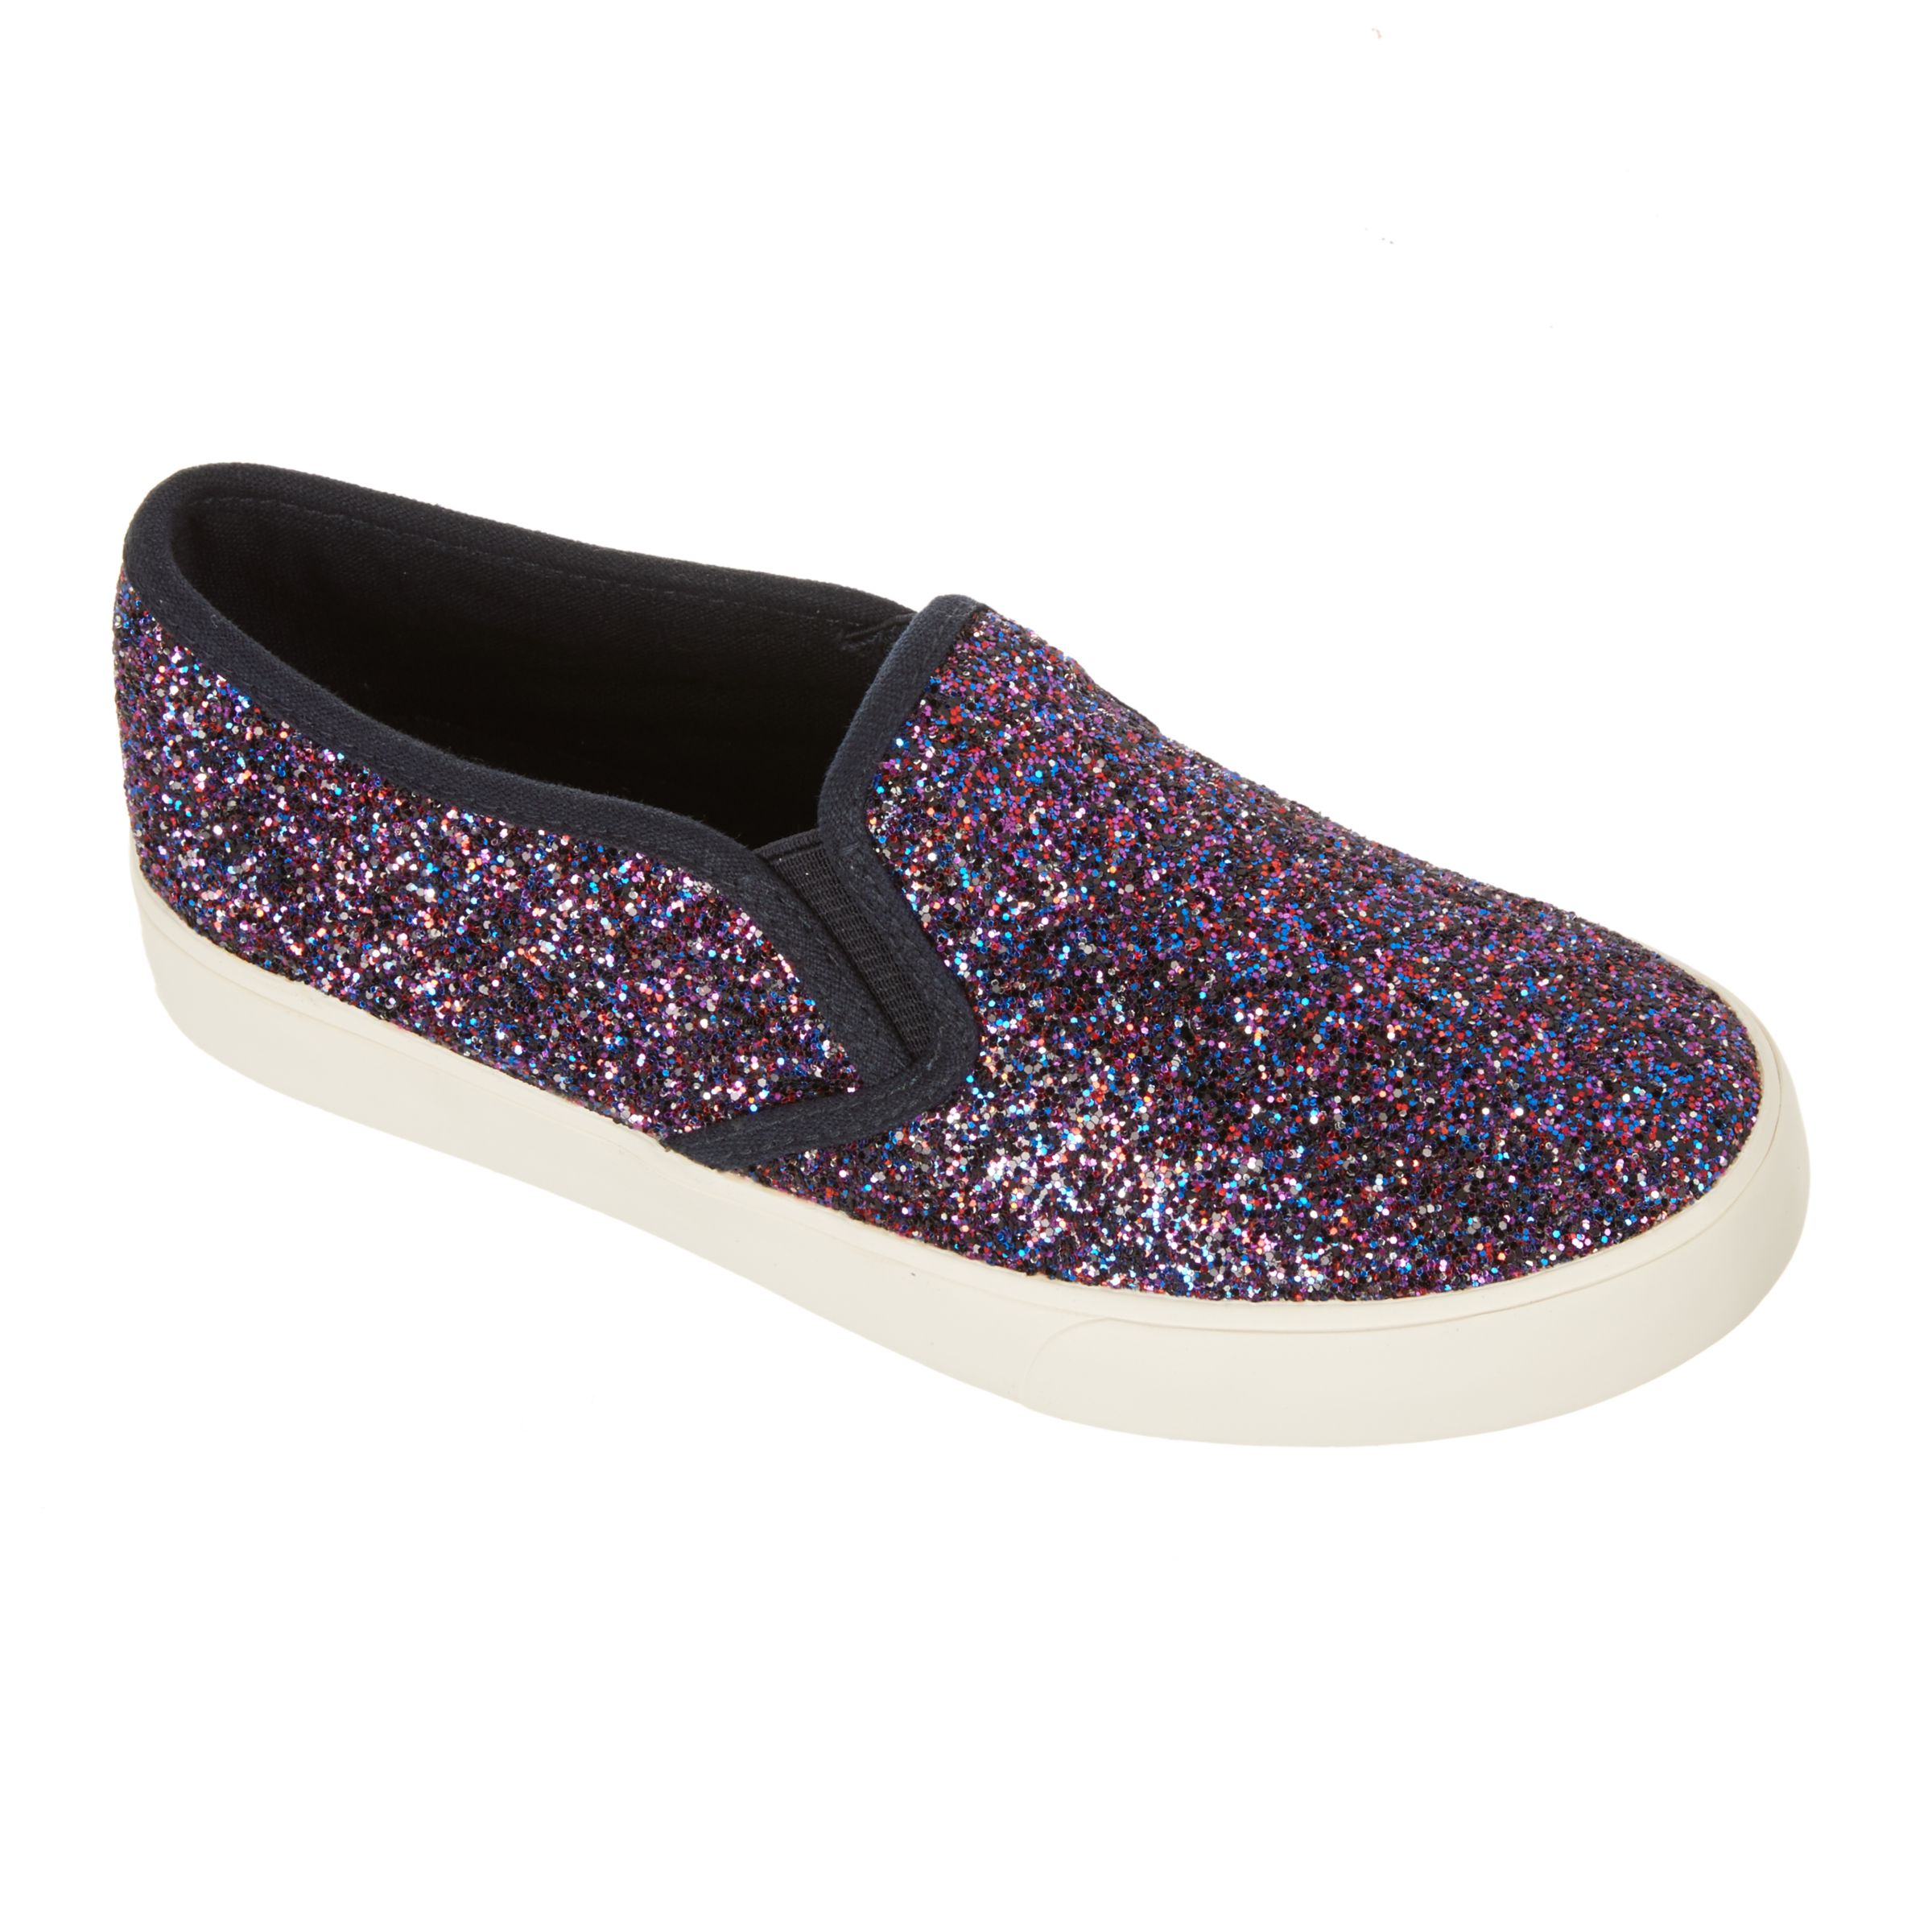 John Lewis & Partners Children's Pheobe Glitter Slip On Shoes, Purple, 7 Jnr